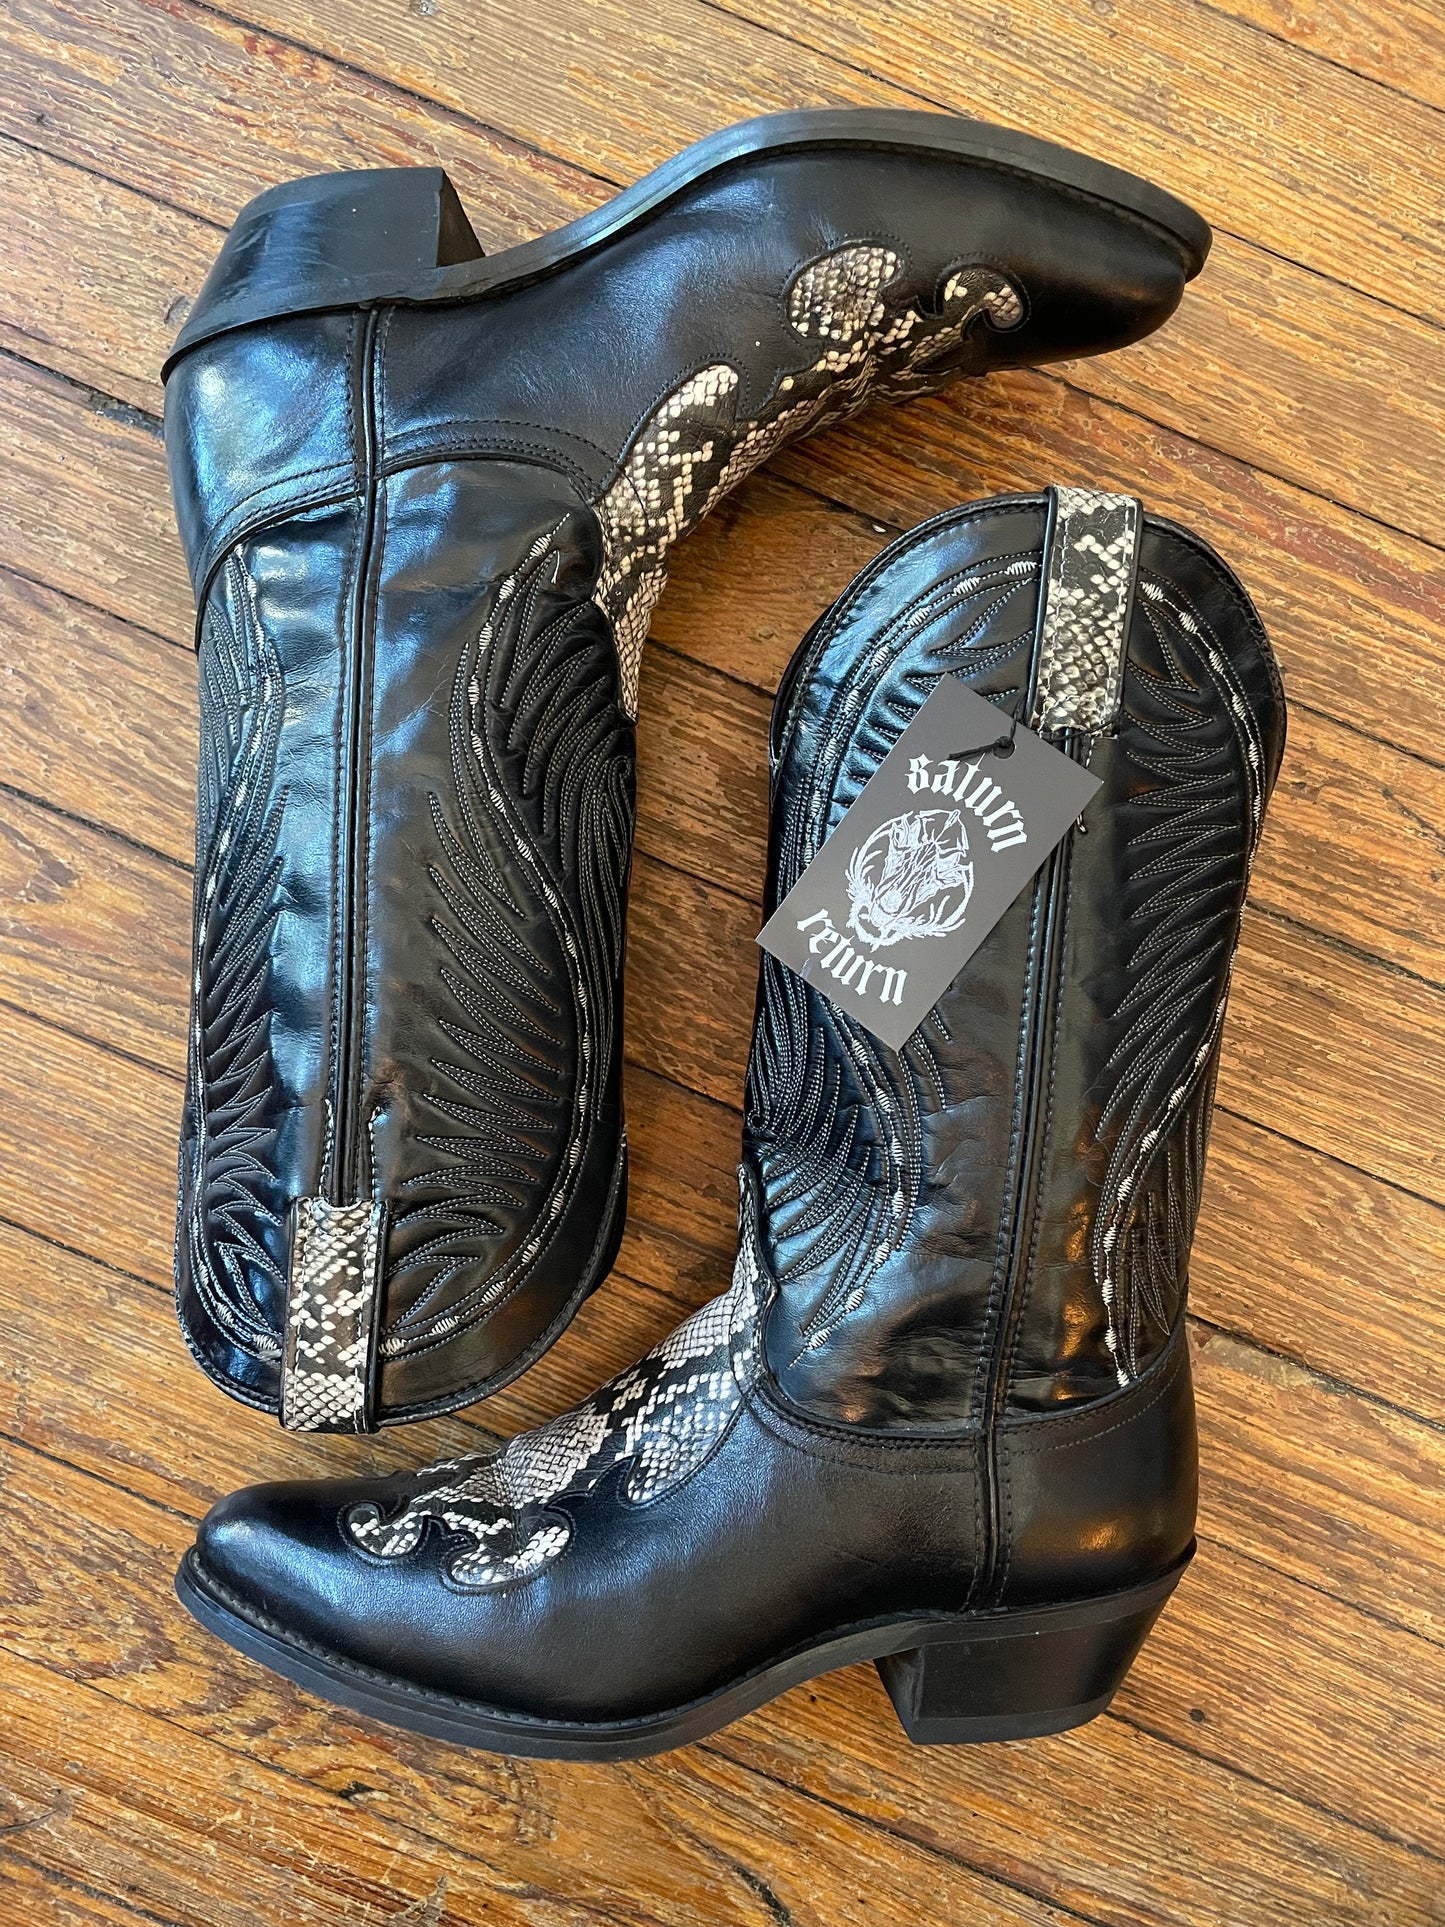 Laredo Black and White Snakeskin Cowboy Boots